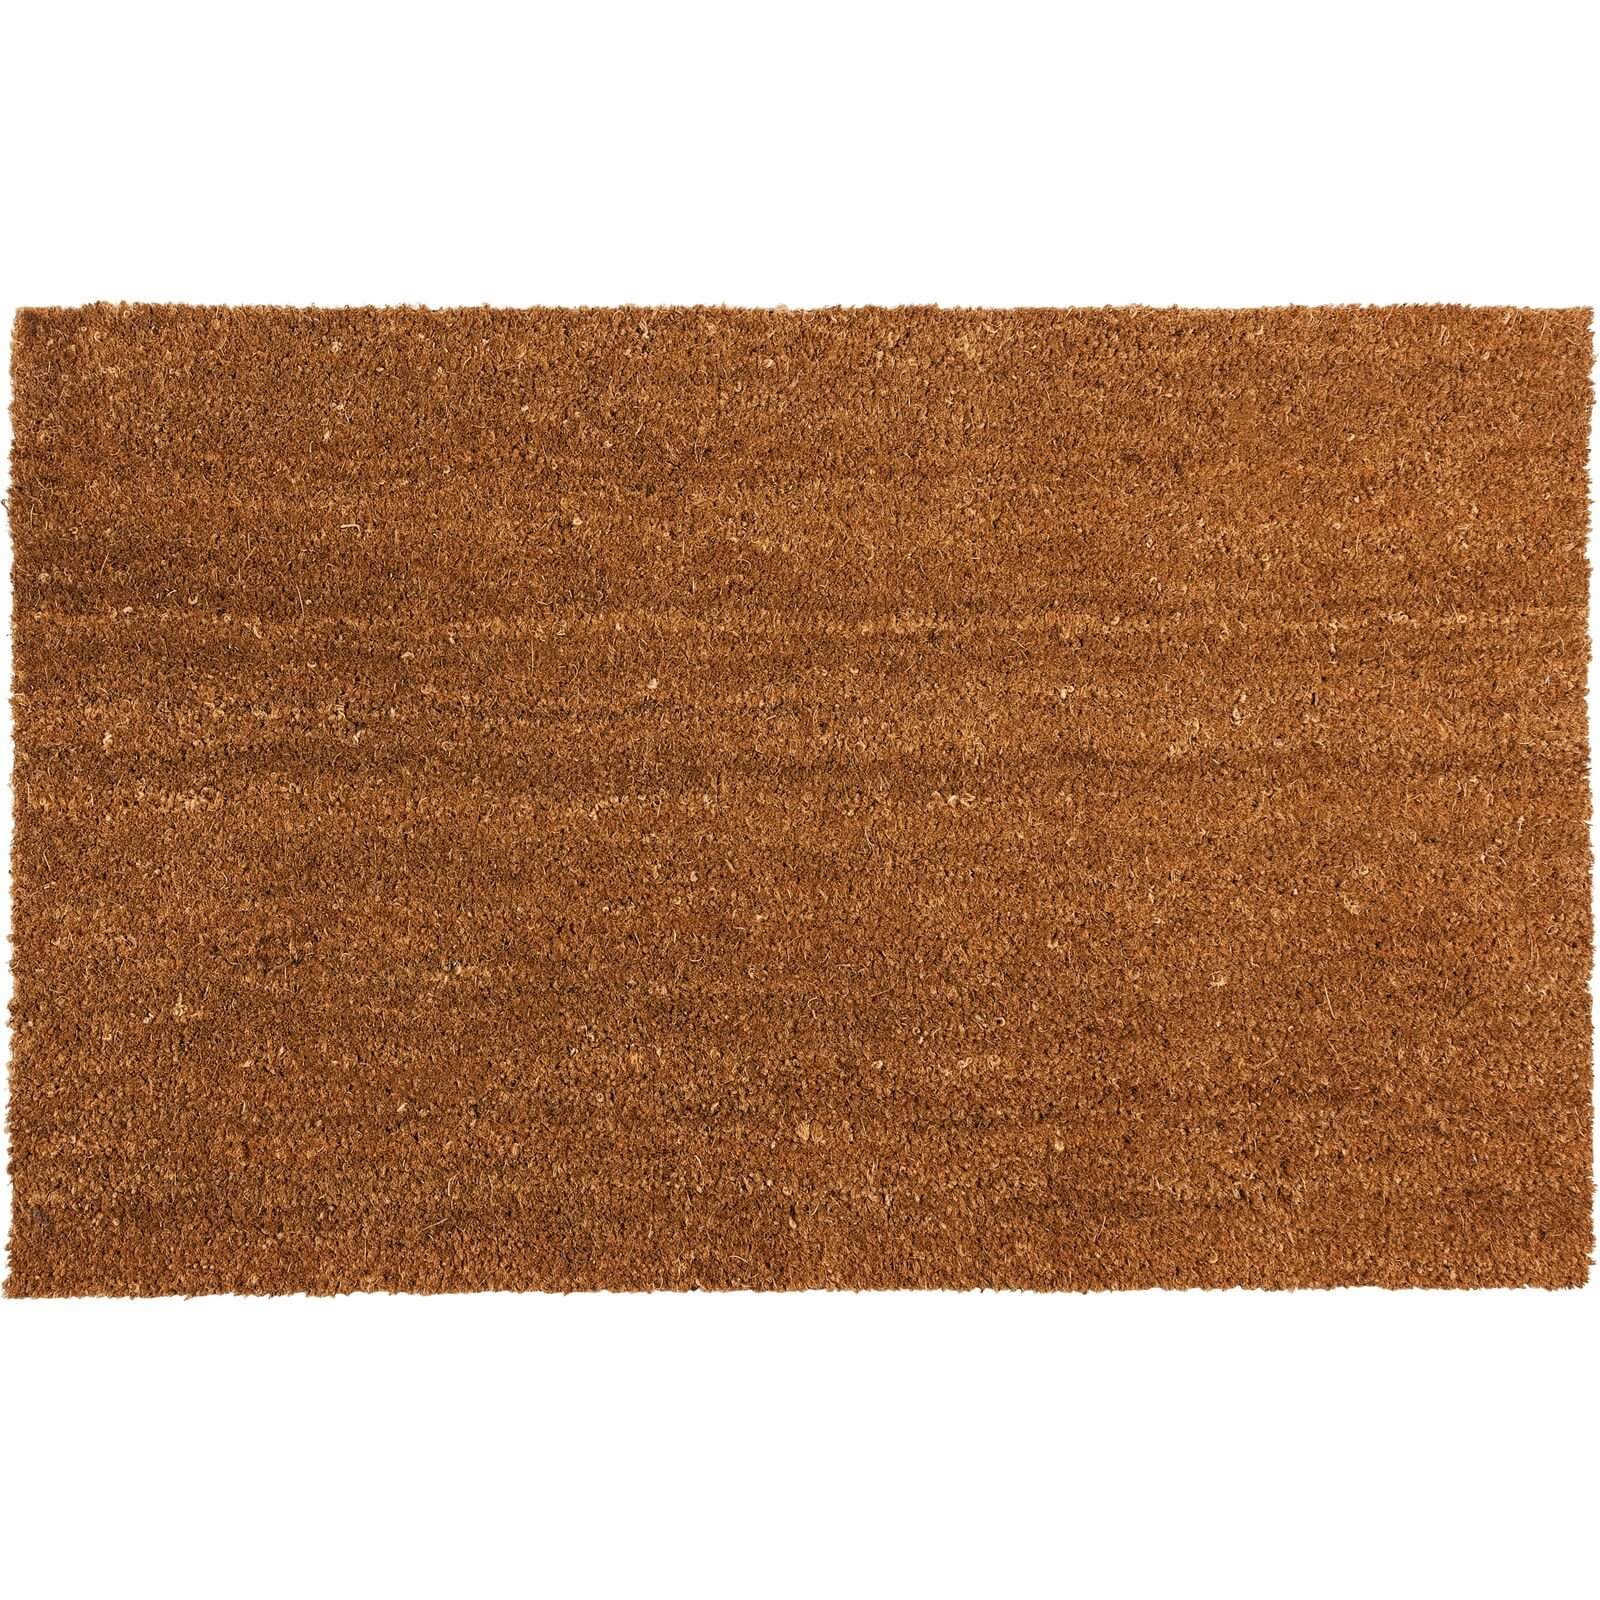 Plain PVC Coir Doormat Large - 60 x 90cm